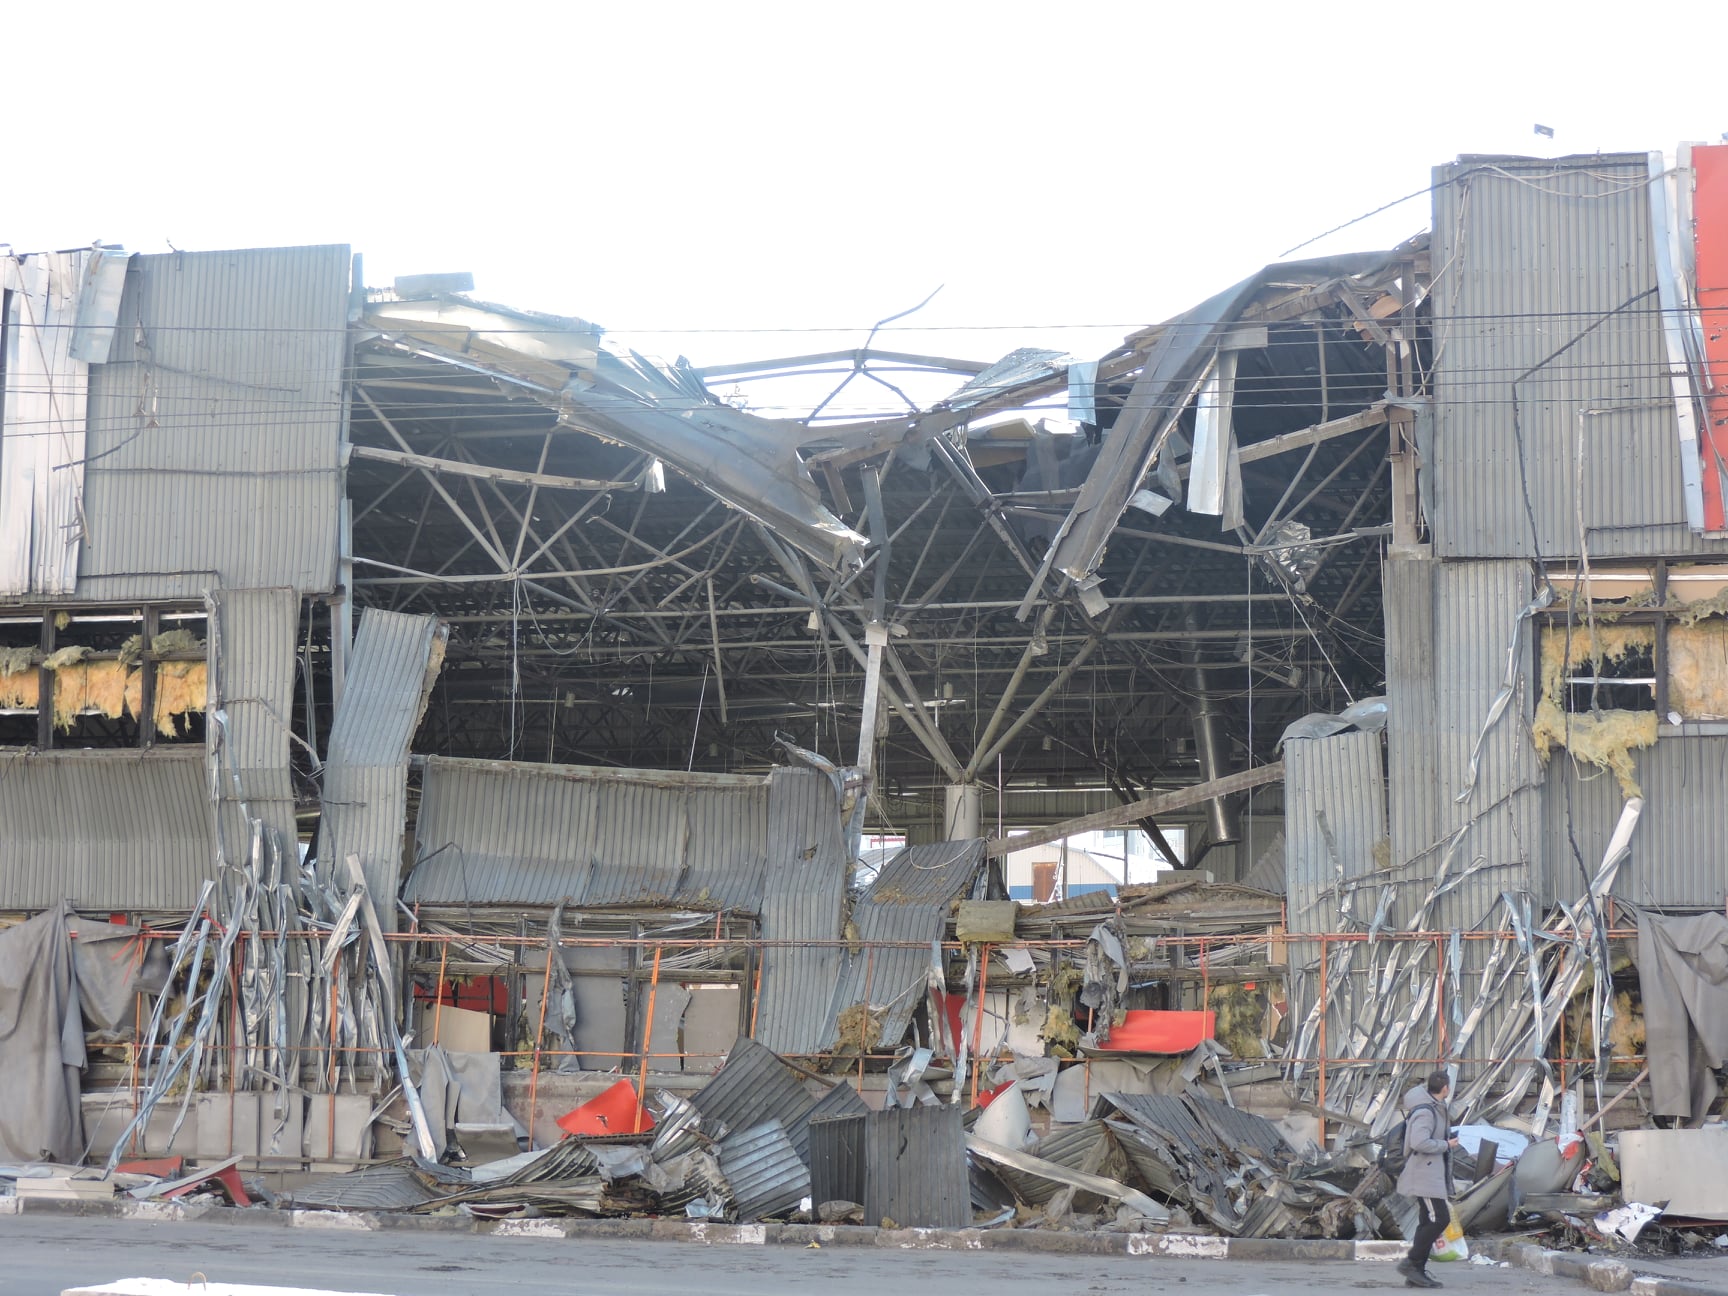 Eines der zerstörten Charkiwer Supermärkte. Bild: Serhij Petrow, CC BY-SA 4.0.